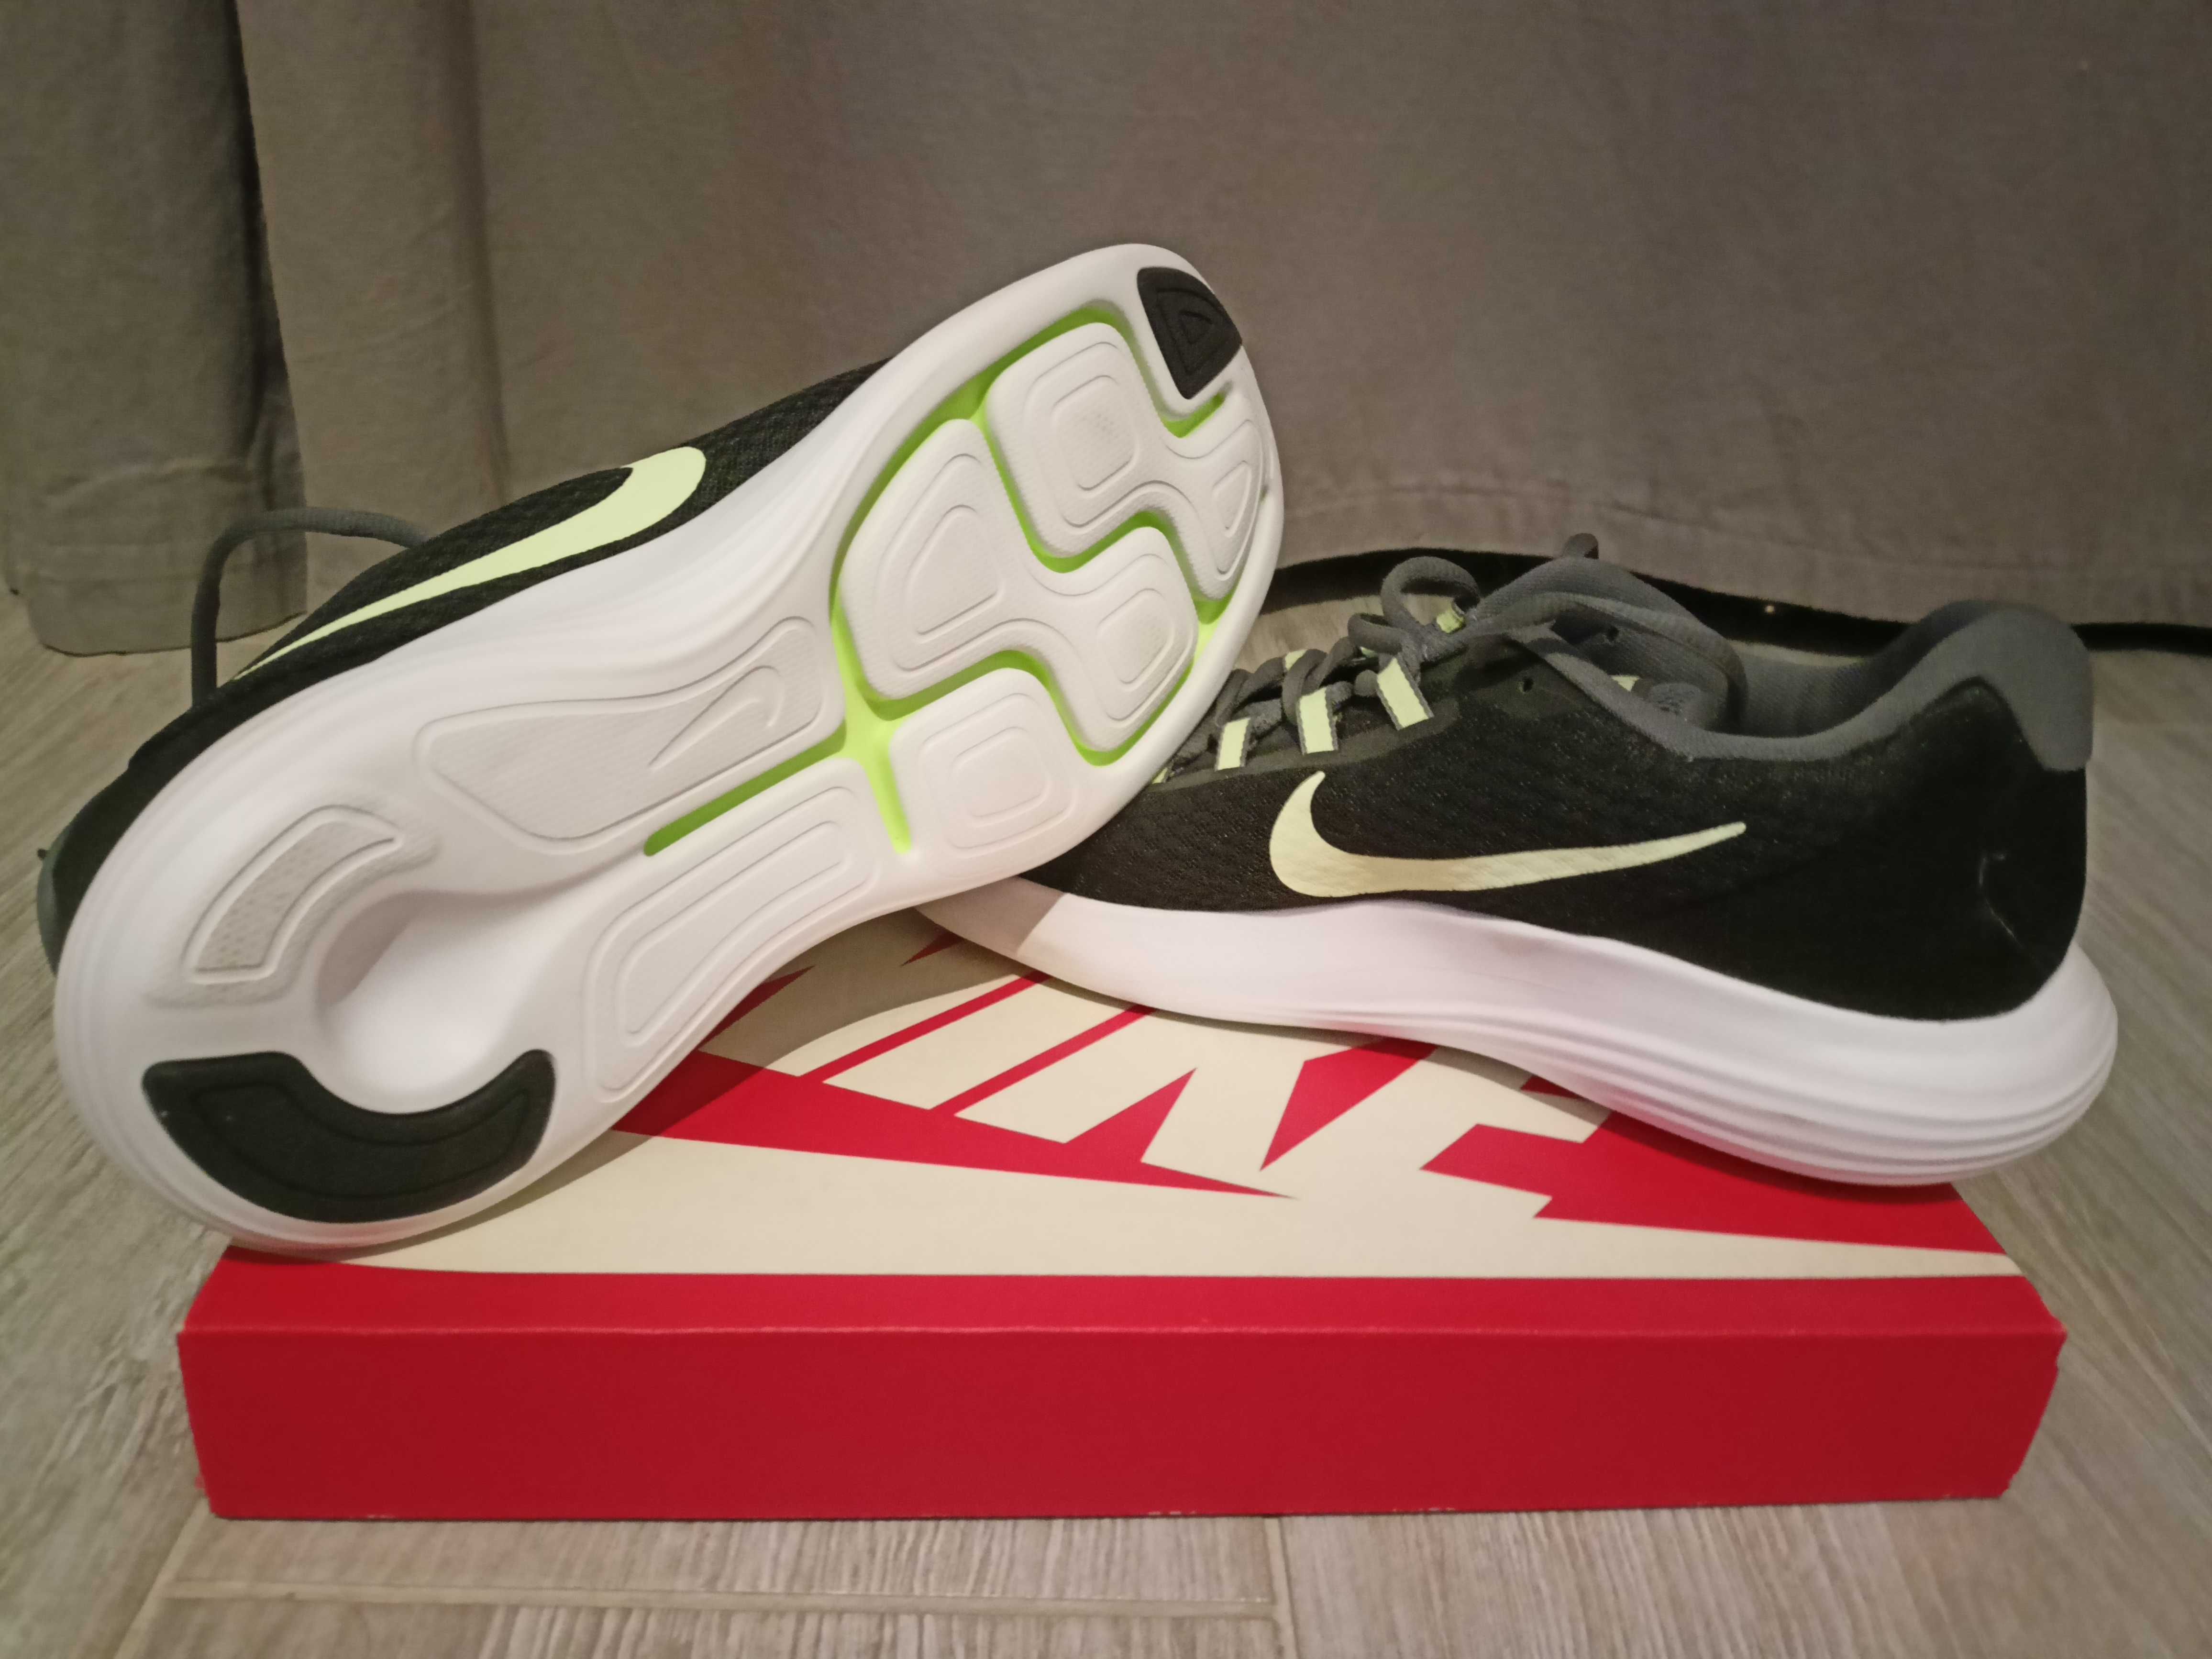 Męskie buty Nike LunarConverge. Rozmiar UK 9, CM 28,5 cm, EUR 44